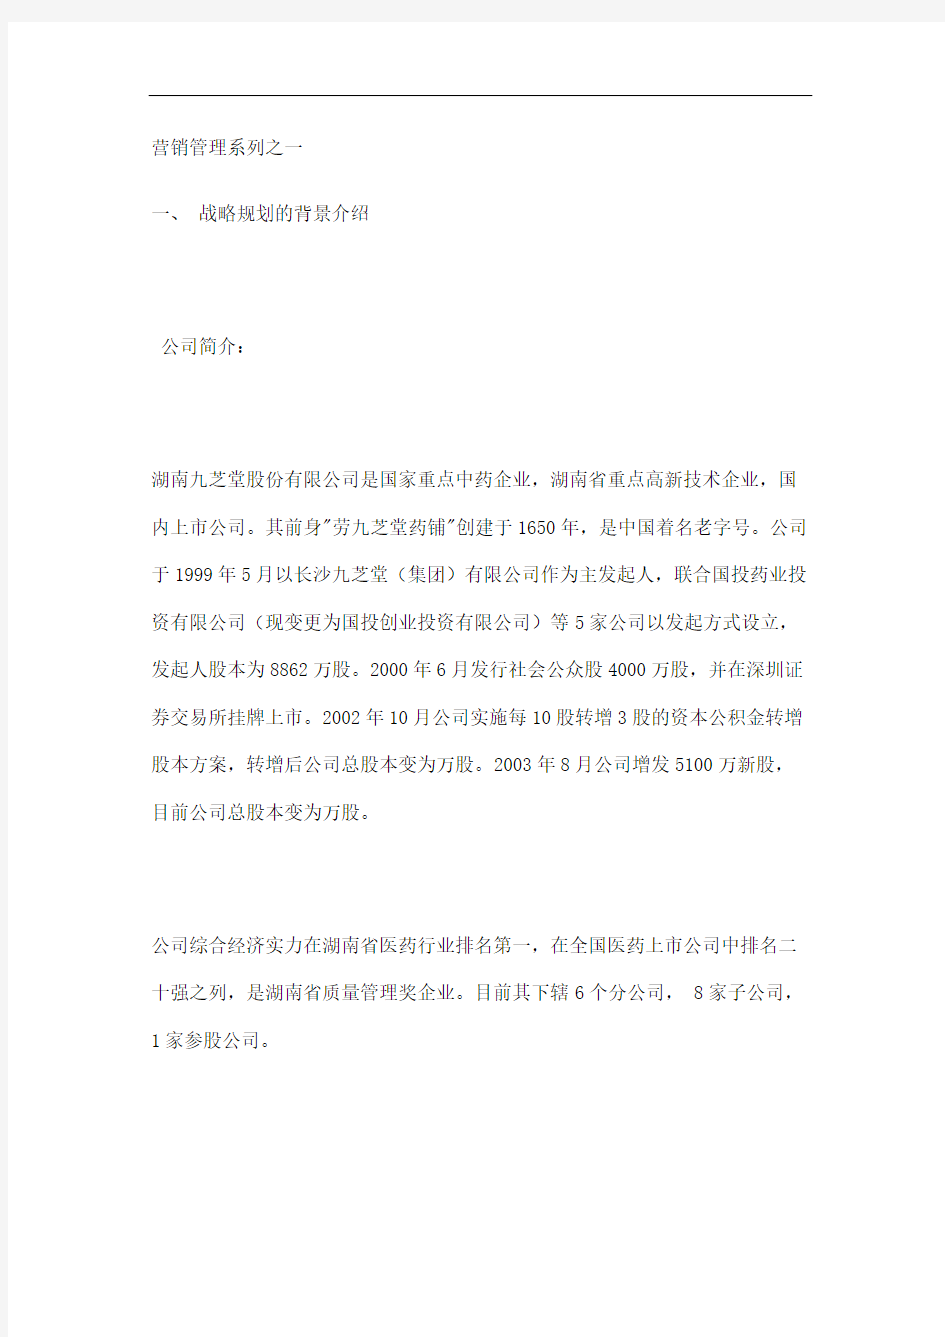 湖南九芝堂股份公司战略规划报告一修订稿